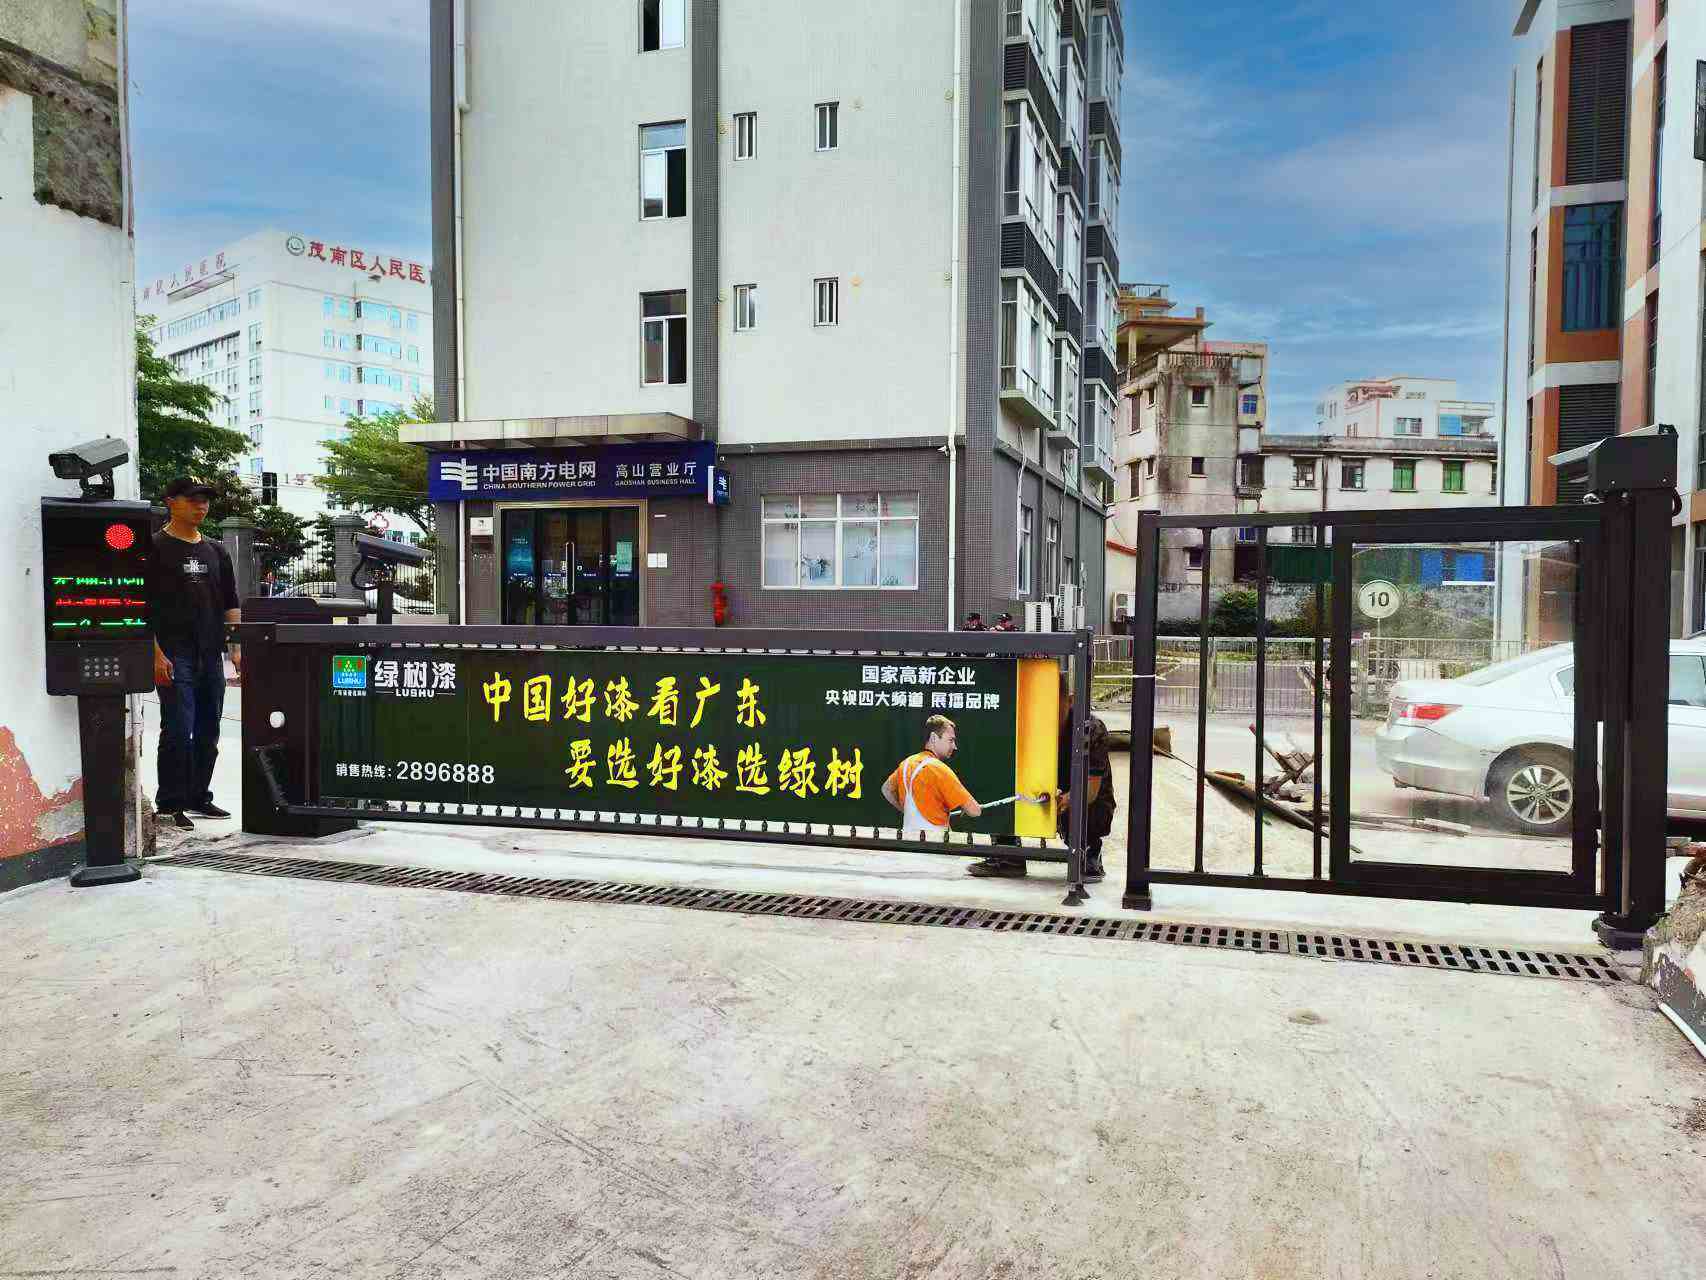 人行广告门与车牌识别系统入驻广东茂名